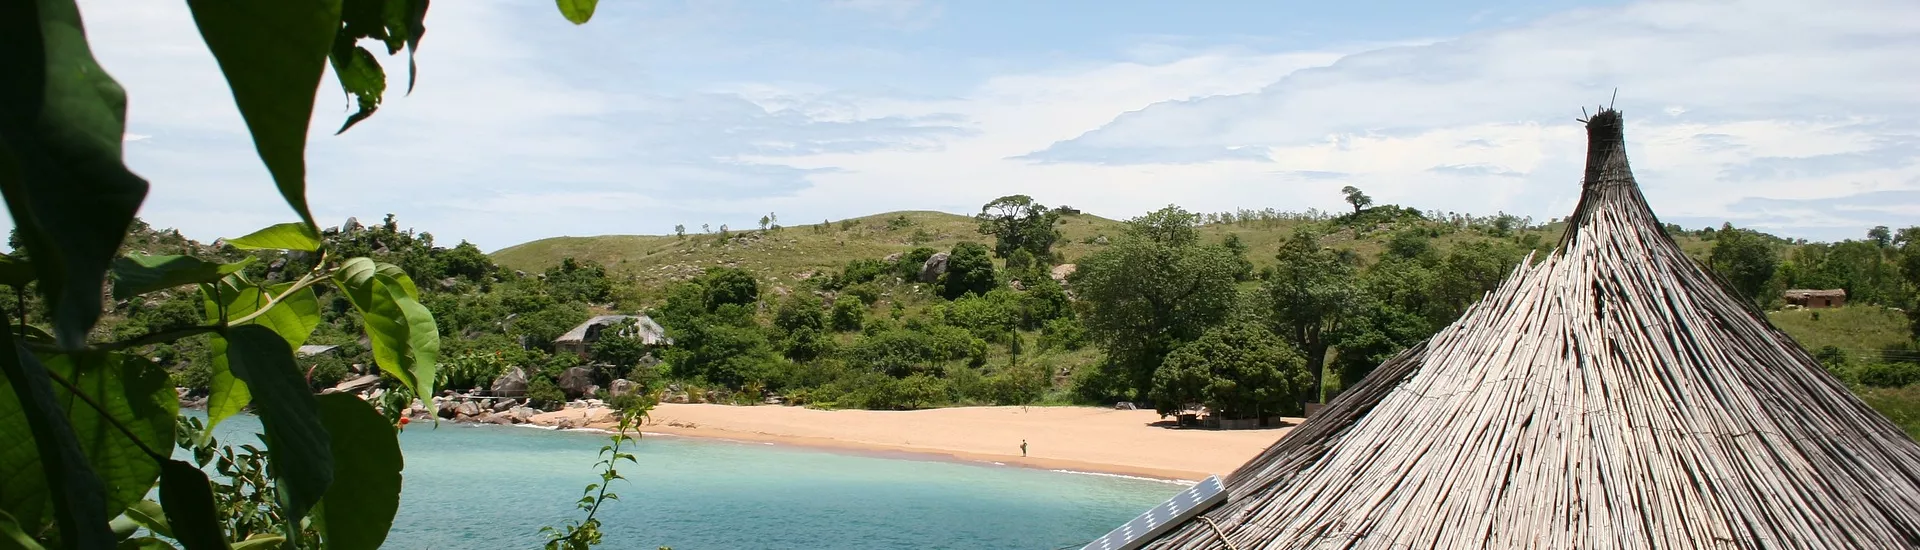 Idyllischer Strandblick in Malawi